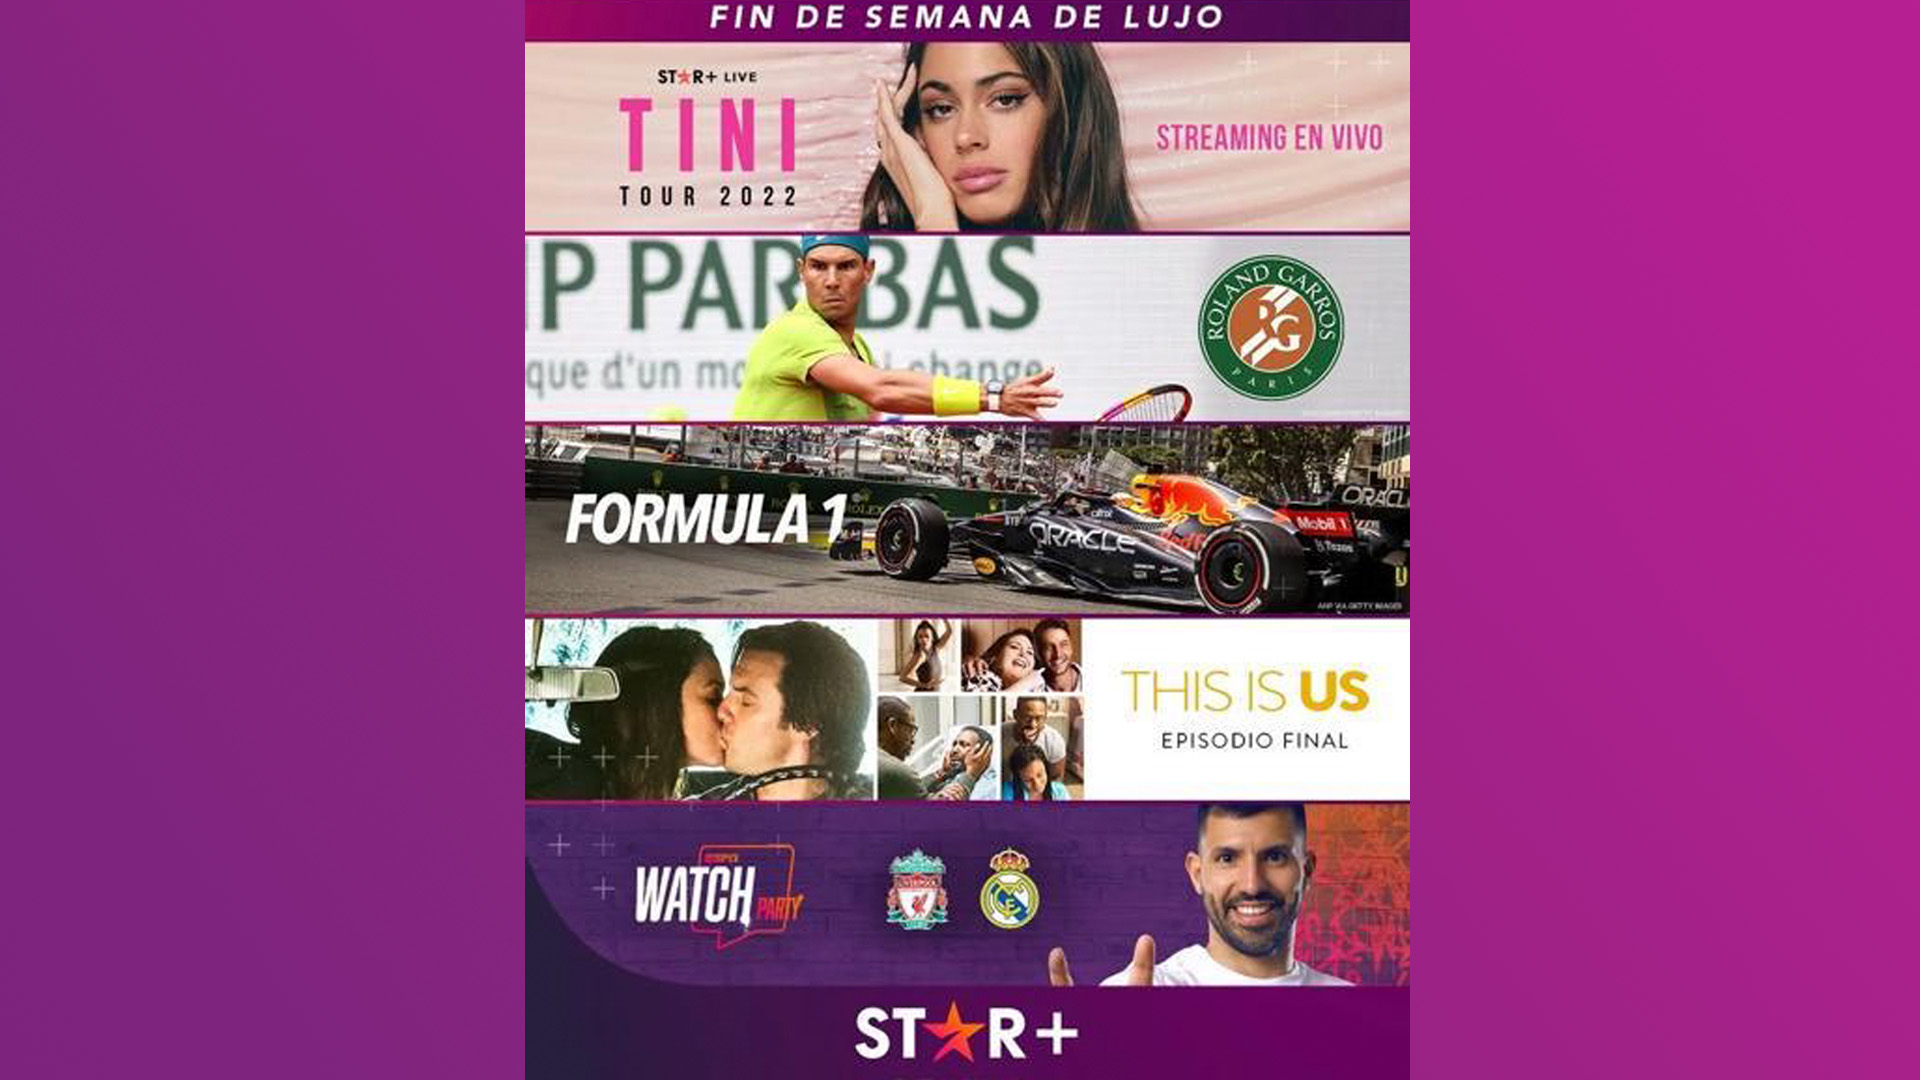 Star+ ofrece una programación de lujo para sus distintas audiencias este fin de semana